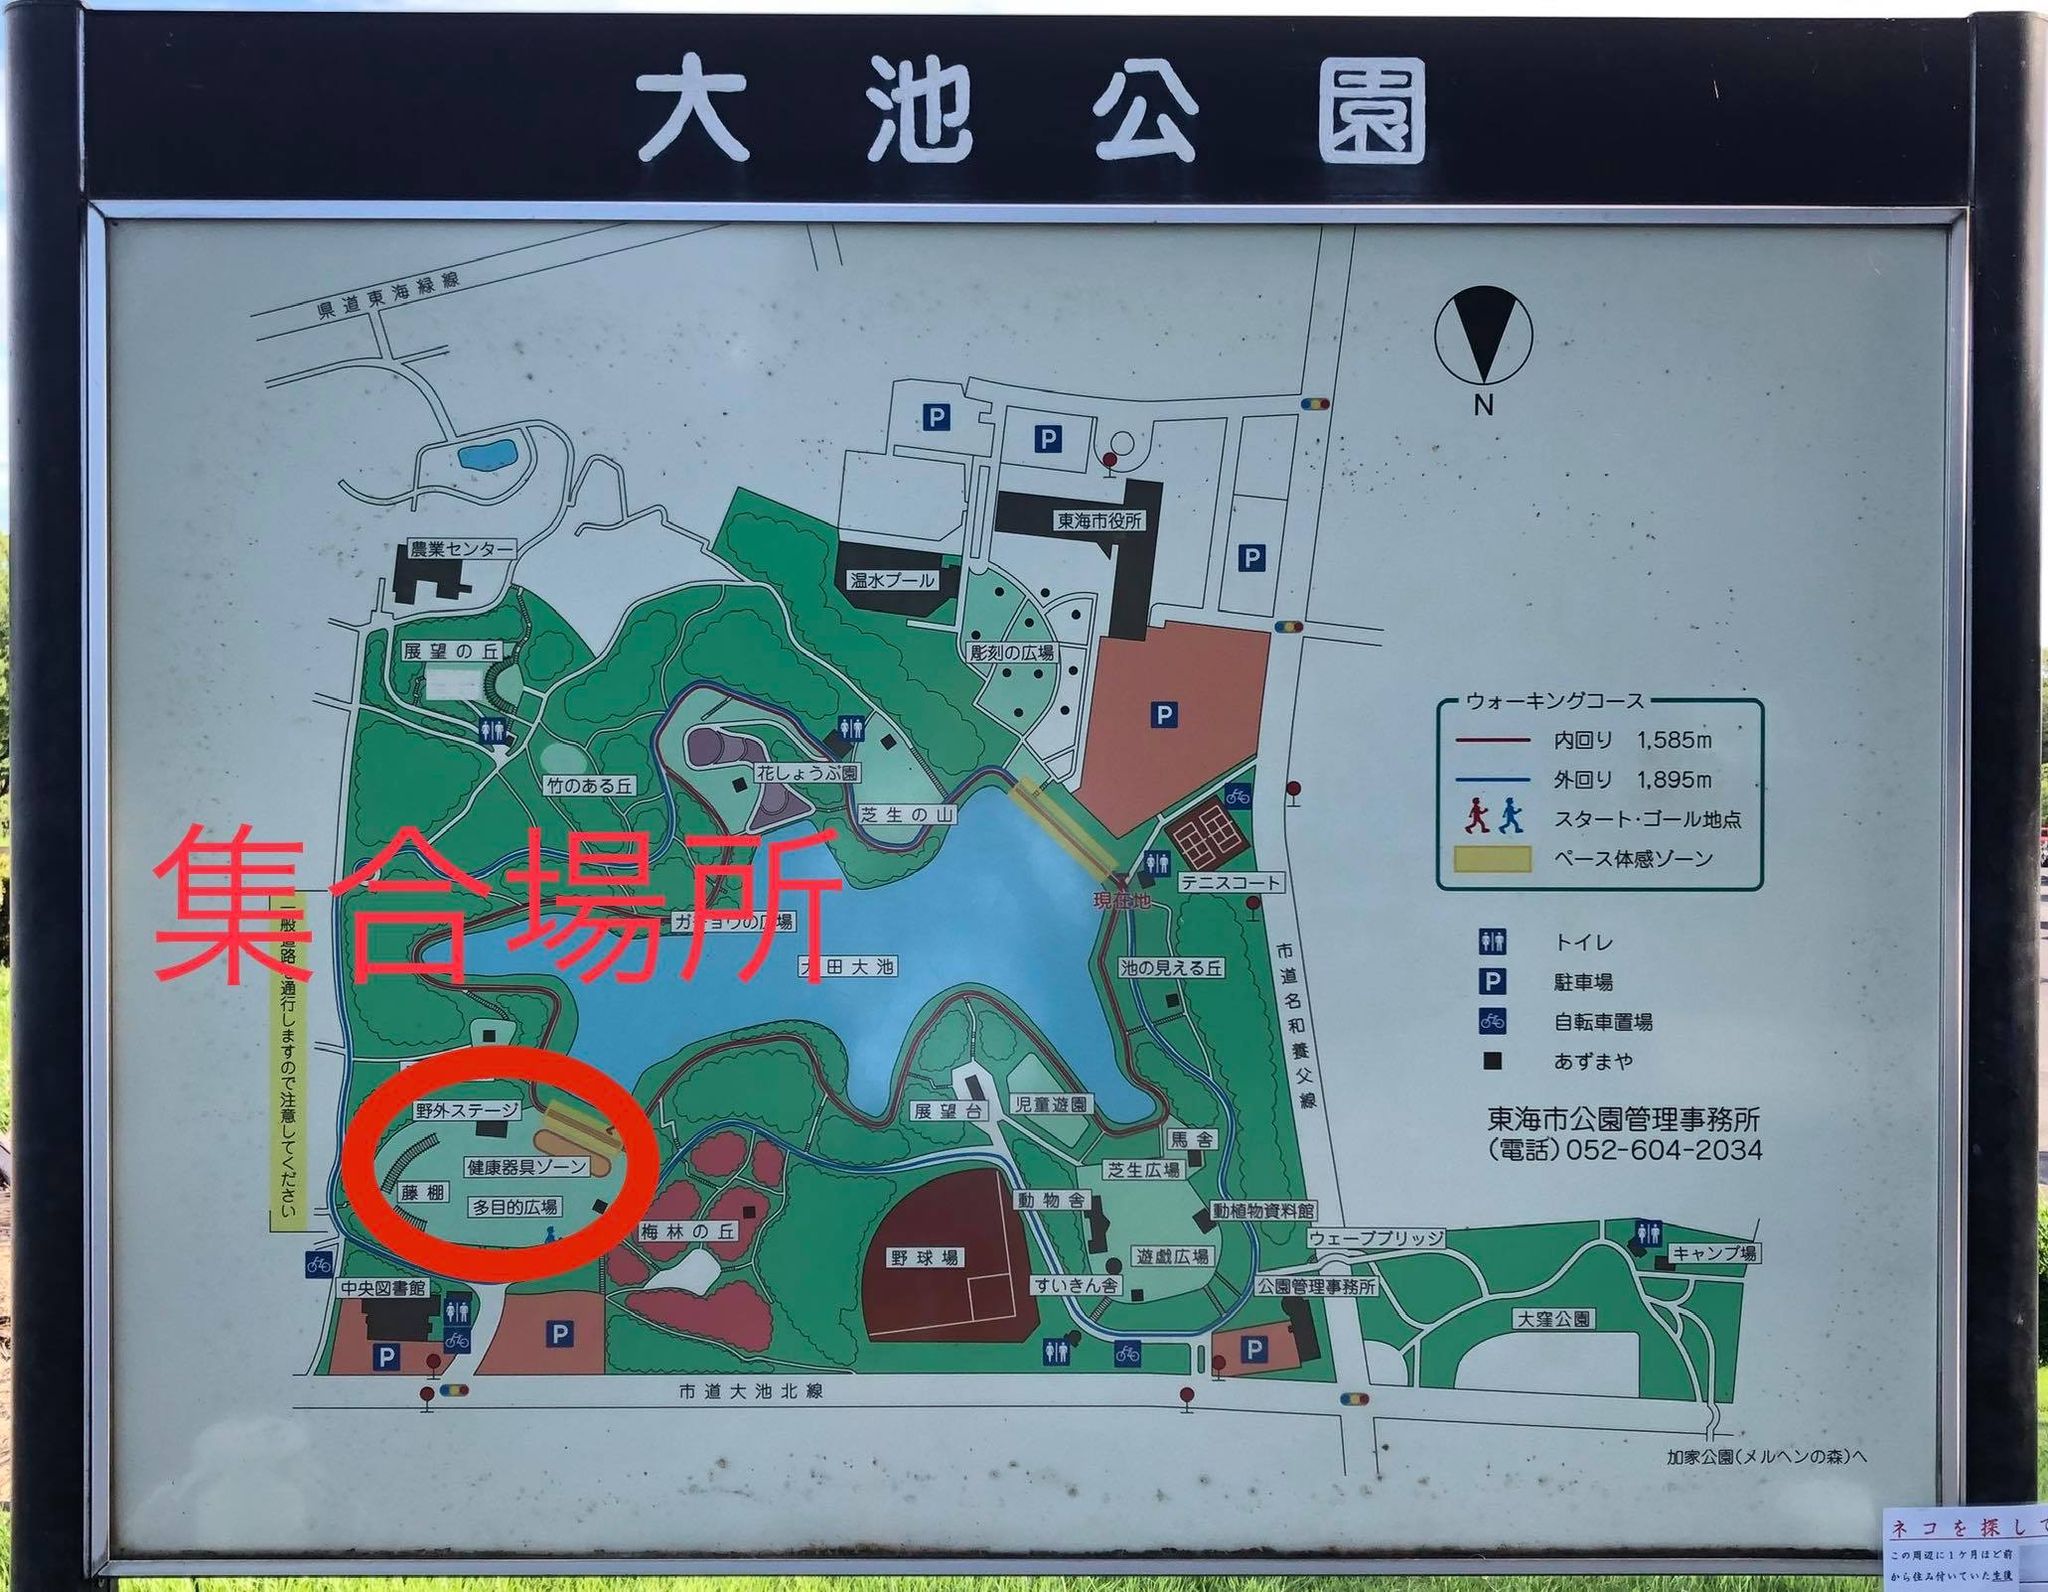 9月5日 土 のランニングクラブ刈谷の練習会は 大池公園 で開催します 名古屋でランニングならrunup